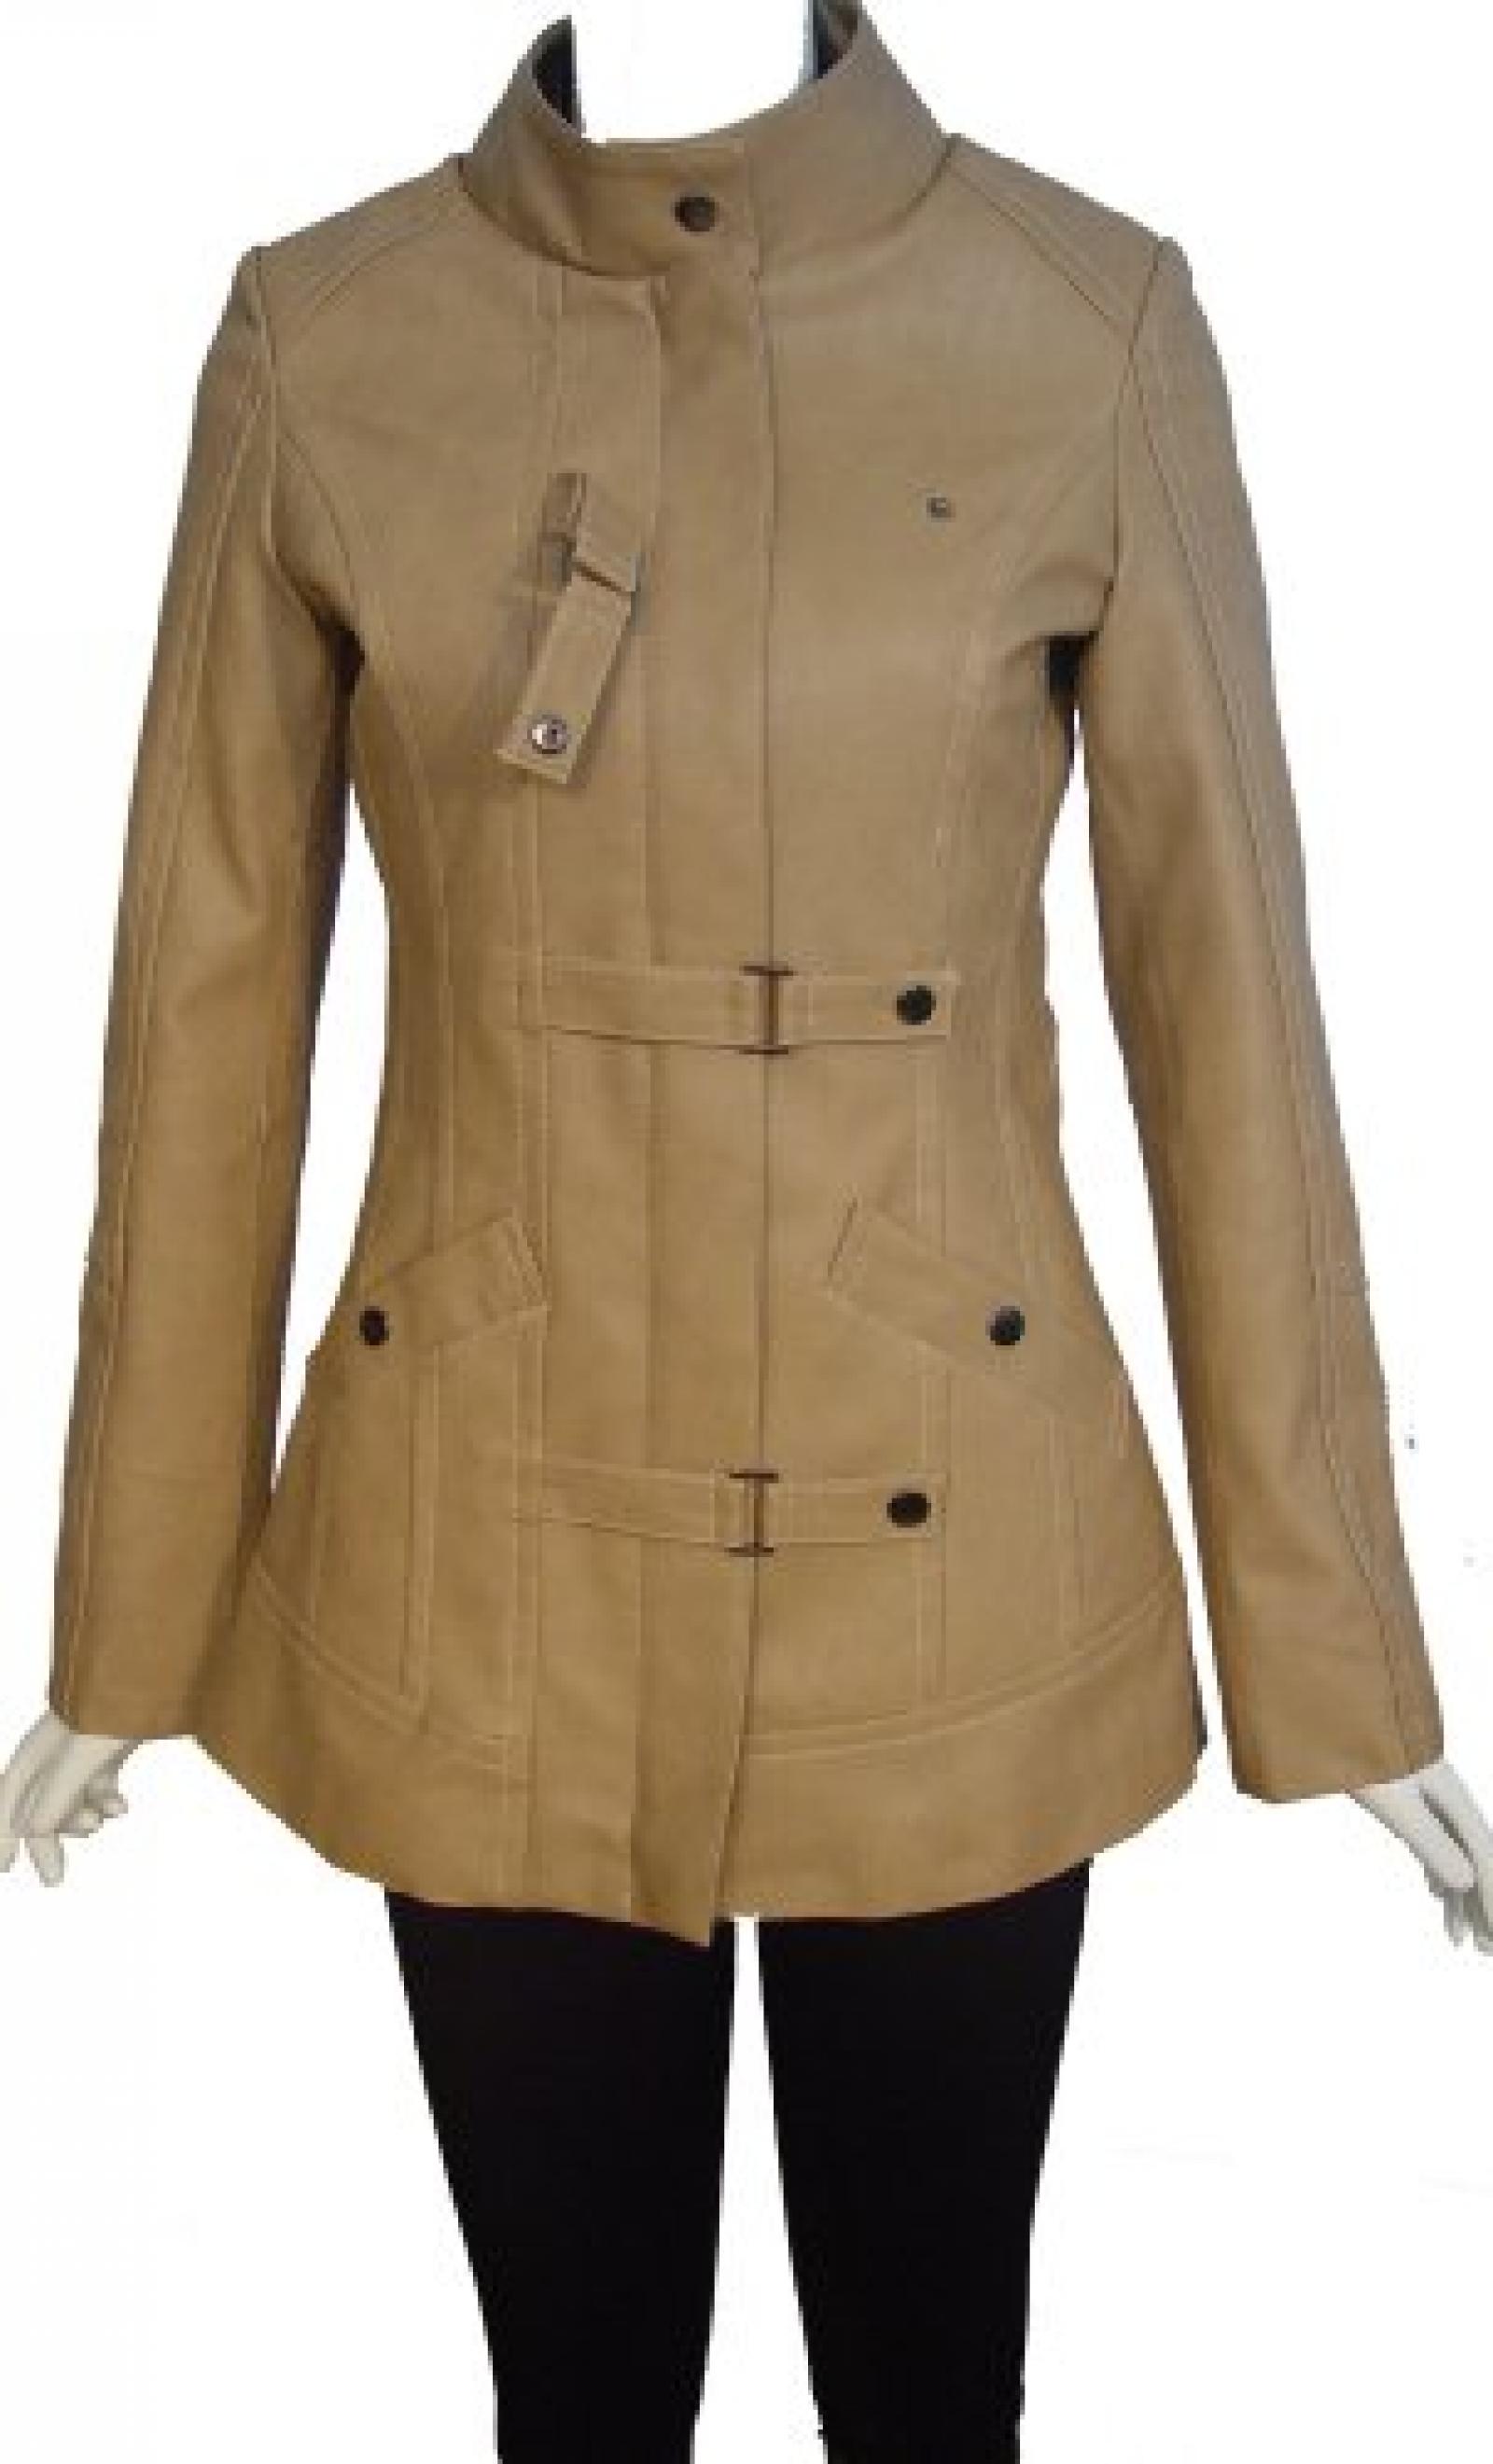 Nettailor Women PETITE SZ 4200 Soft Leather Casual Jacket Placket Tap Closure 